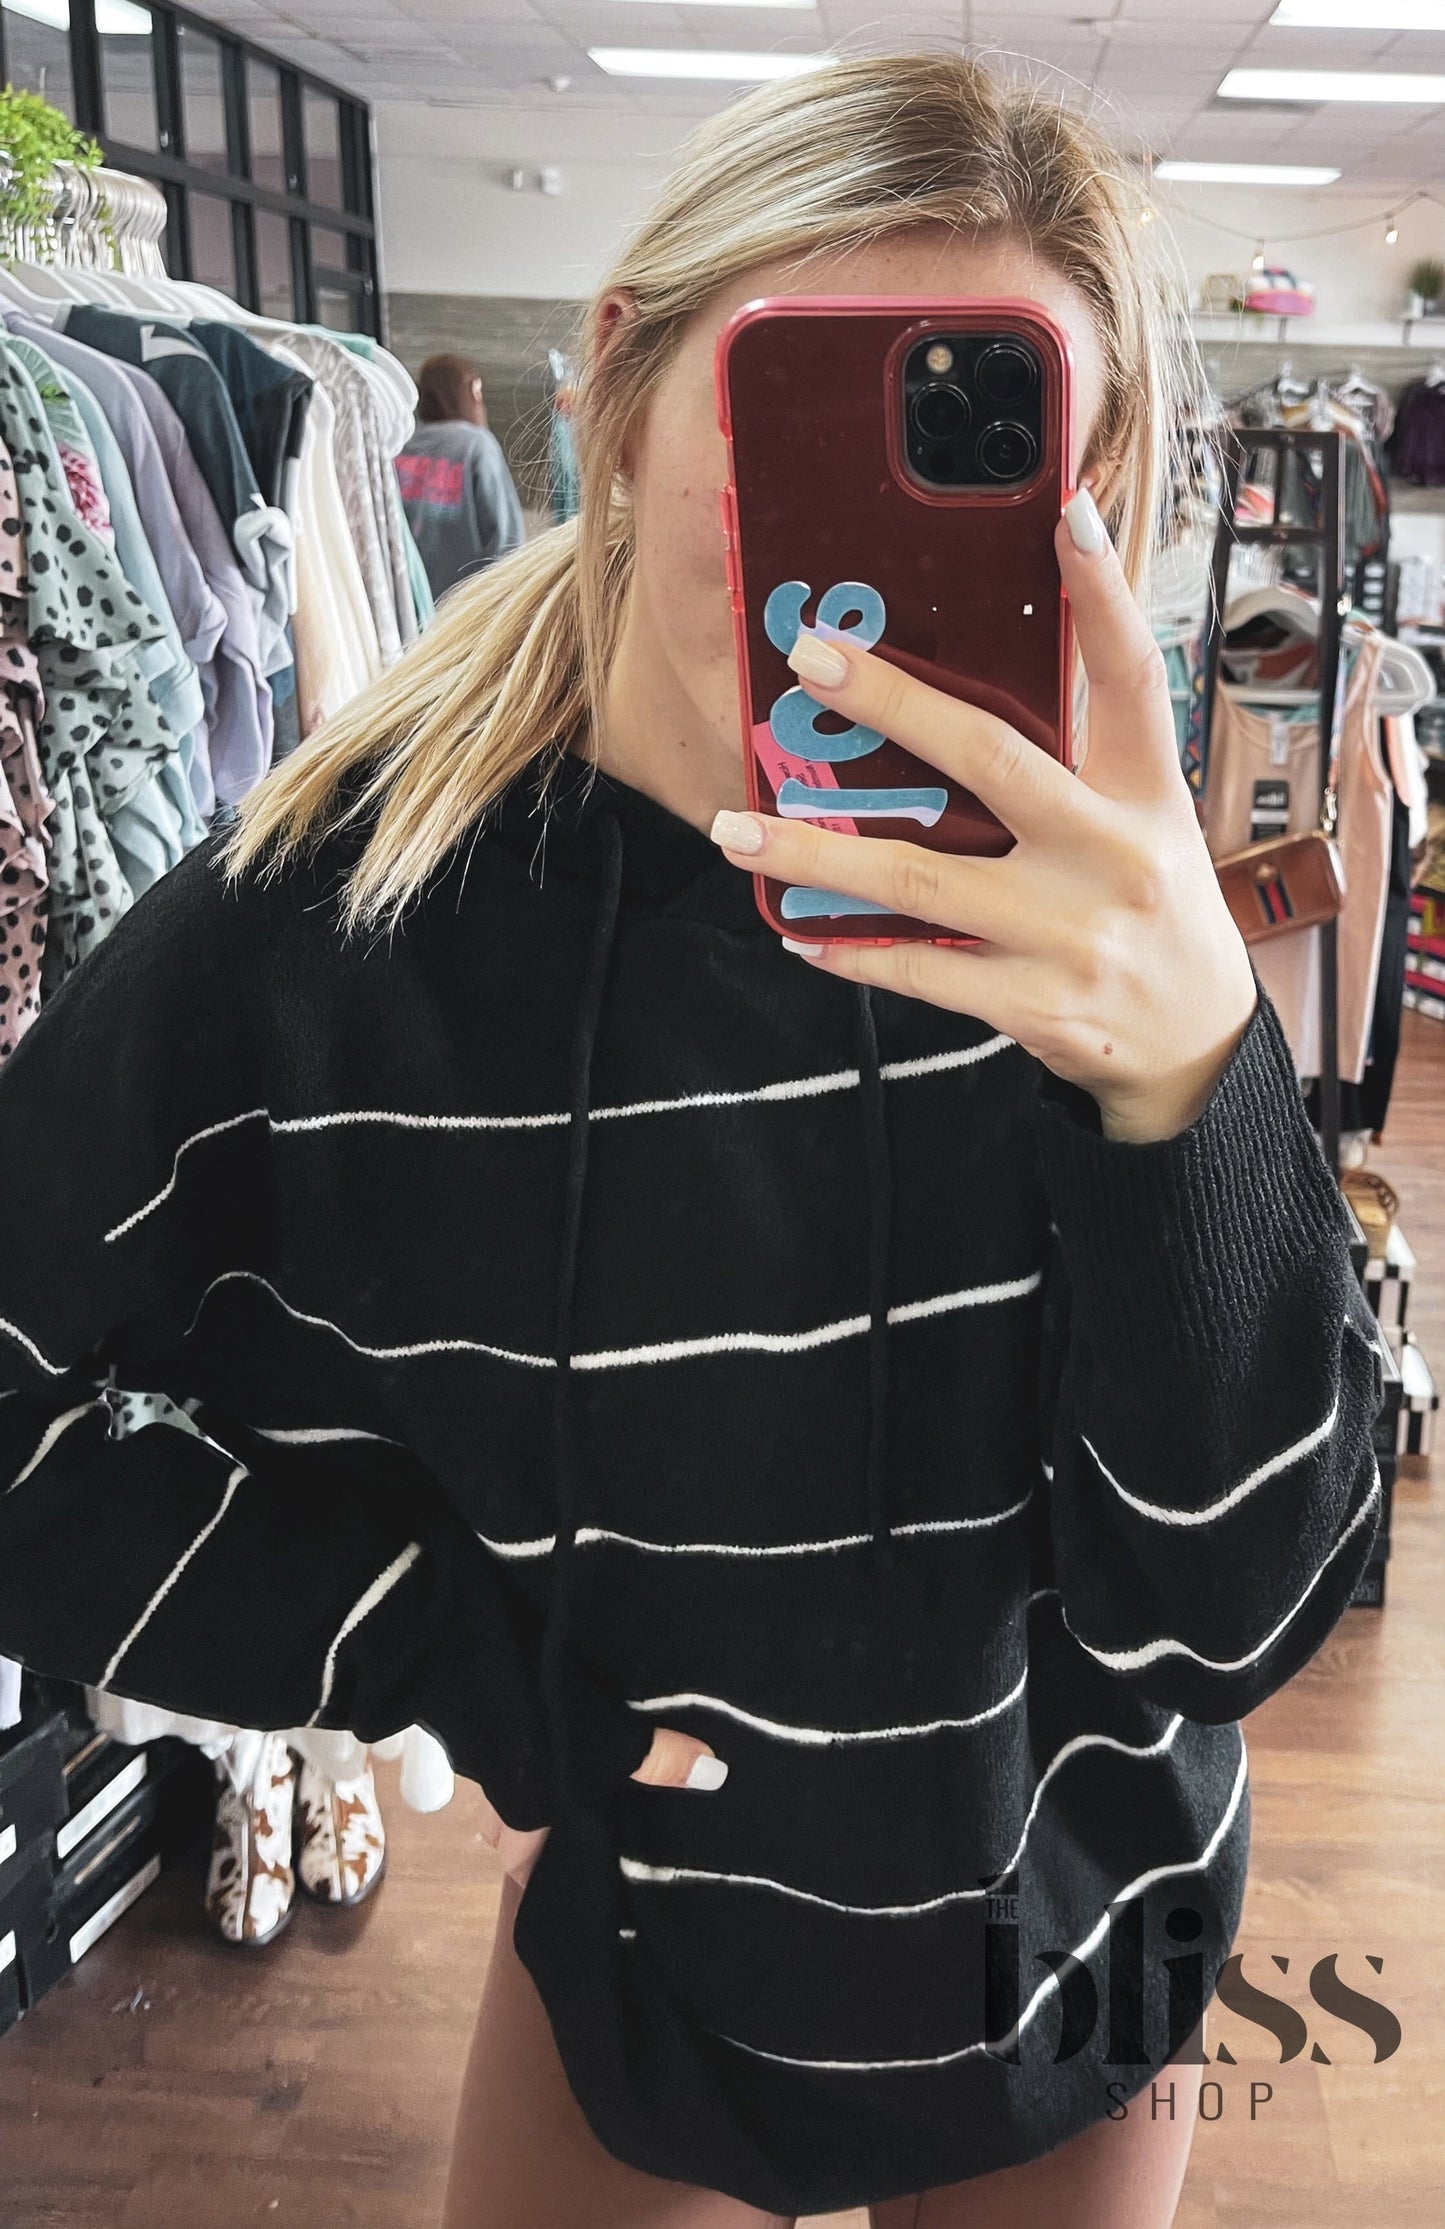 Sophia Striped Sweater Hoodie